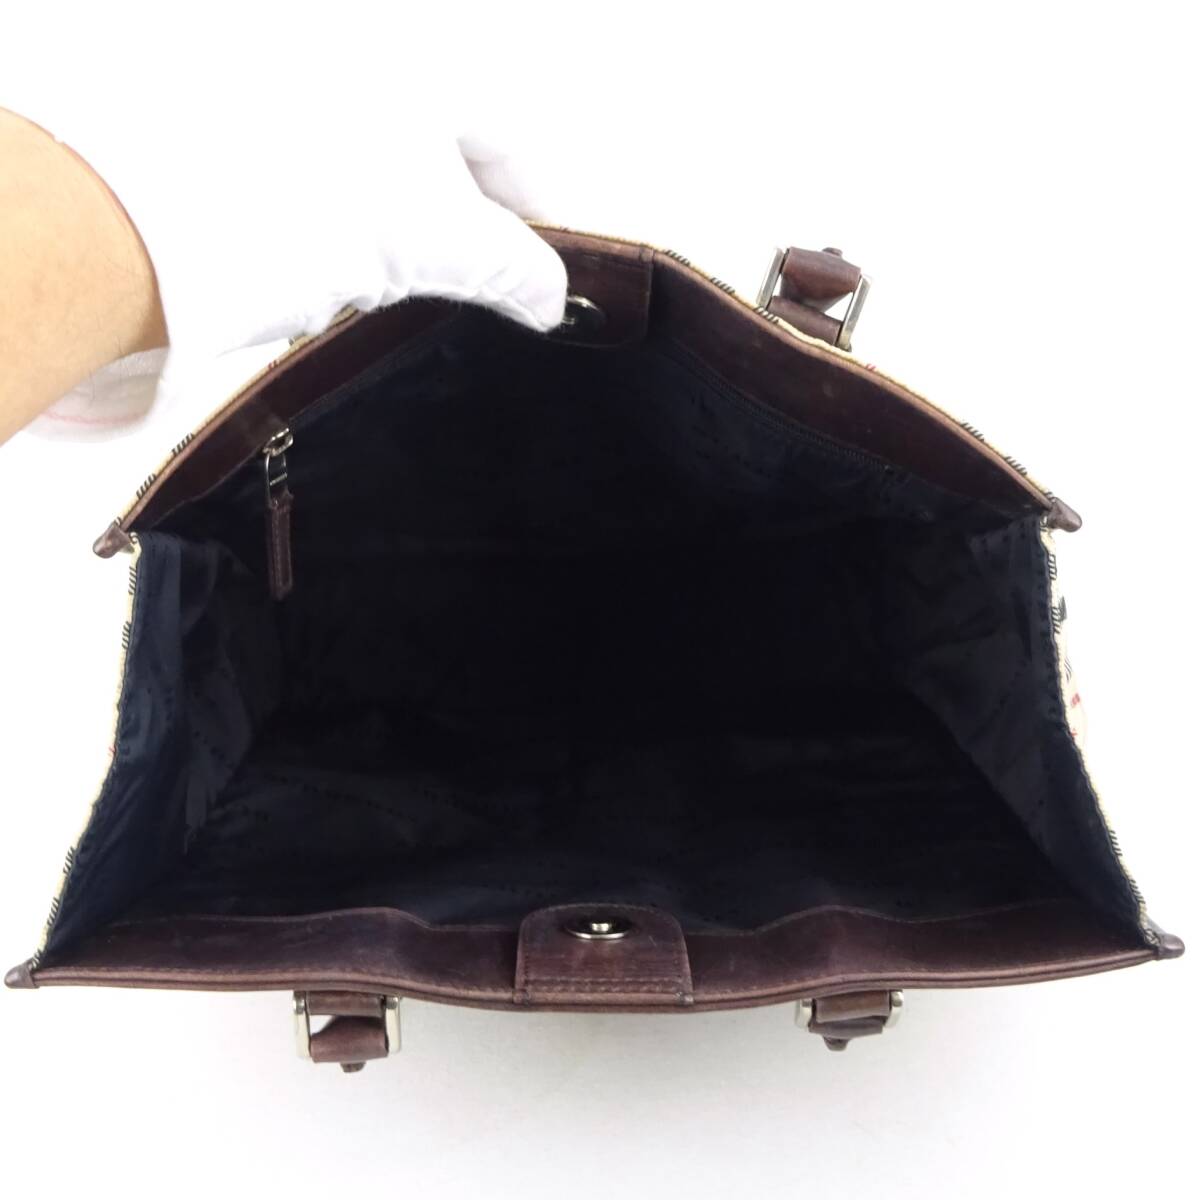  подлинный товар # Burberry # бежевый noba проверка парусина / Brown кожа / ручная сумочка / большая сумка /346152